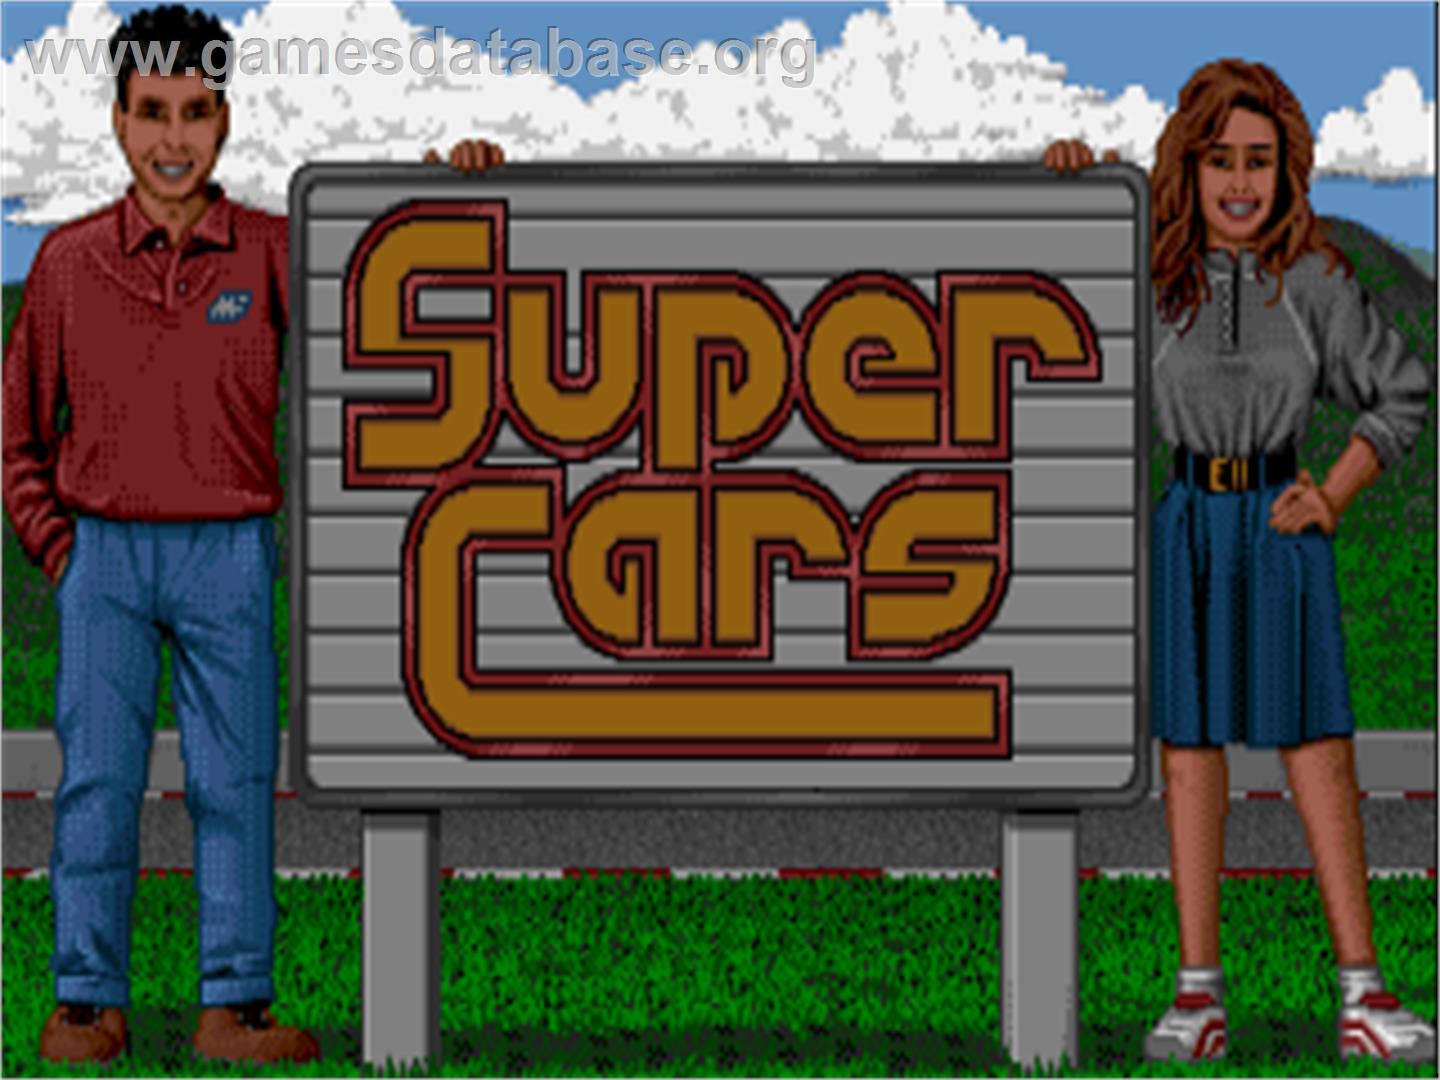 Super Cars - Commodore Amiga - Artwork - Title Screen